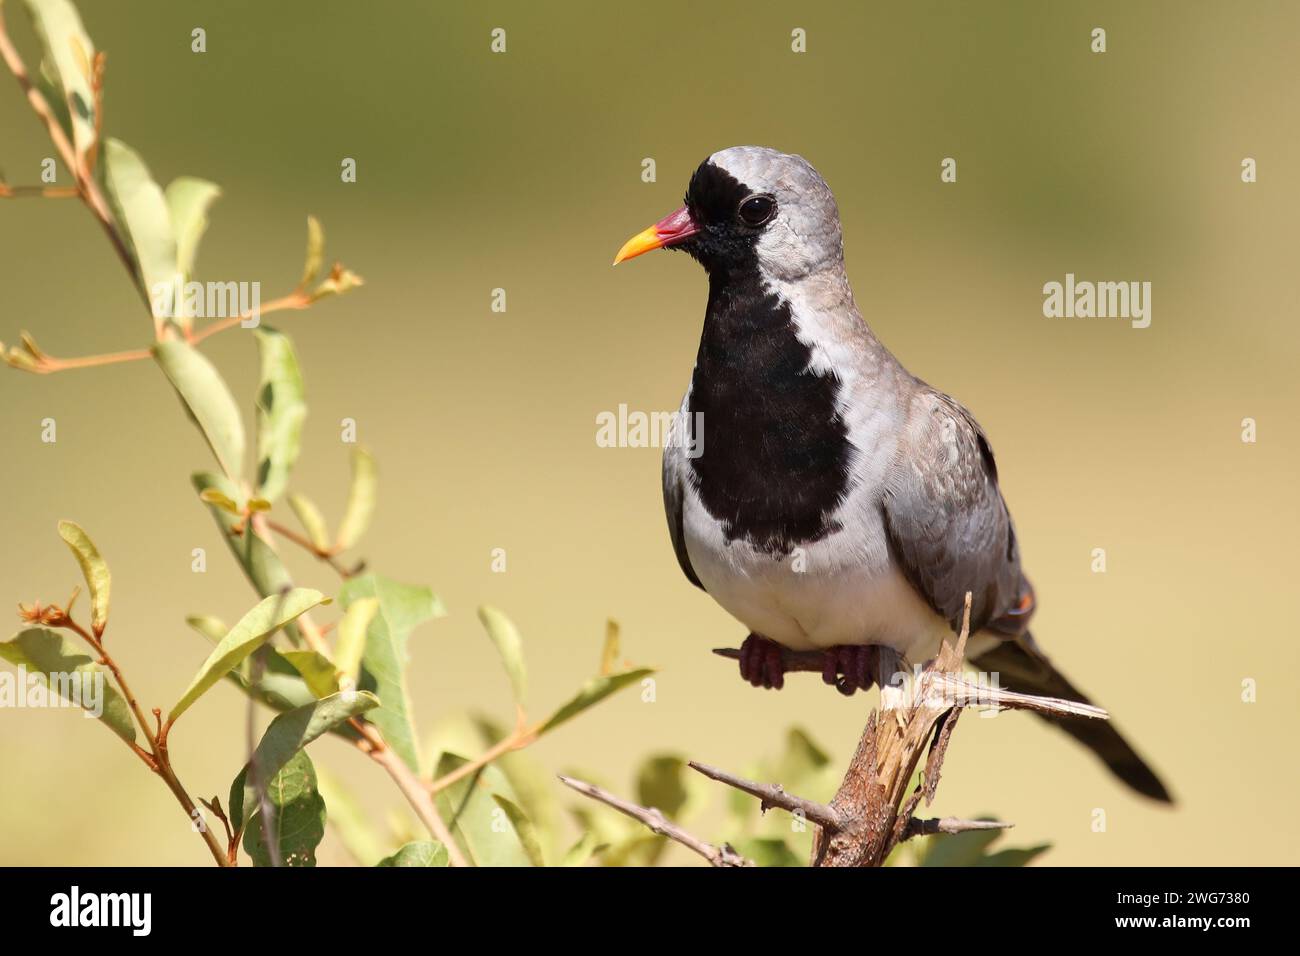 Kaptäubchen oder Maskentäubchen / Namaqua dove / Oena capensis Foto Stock